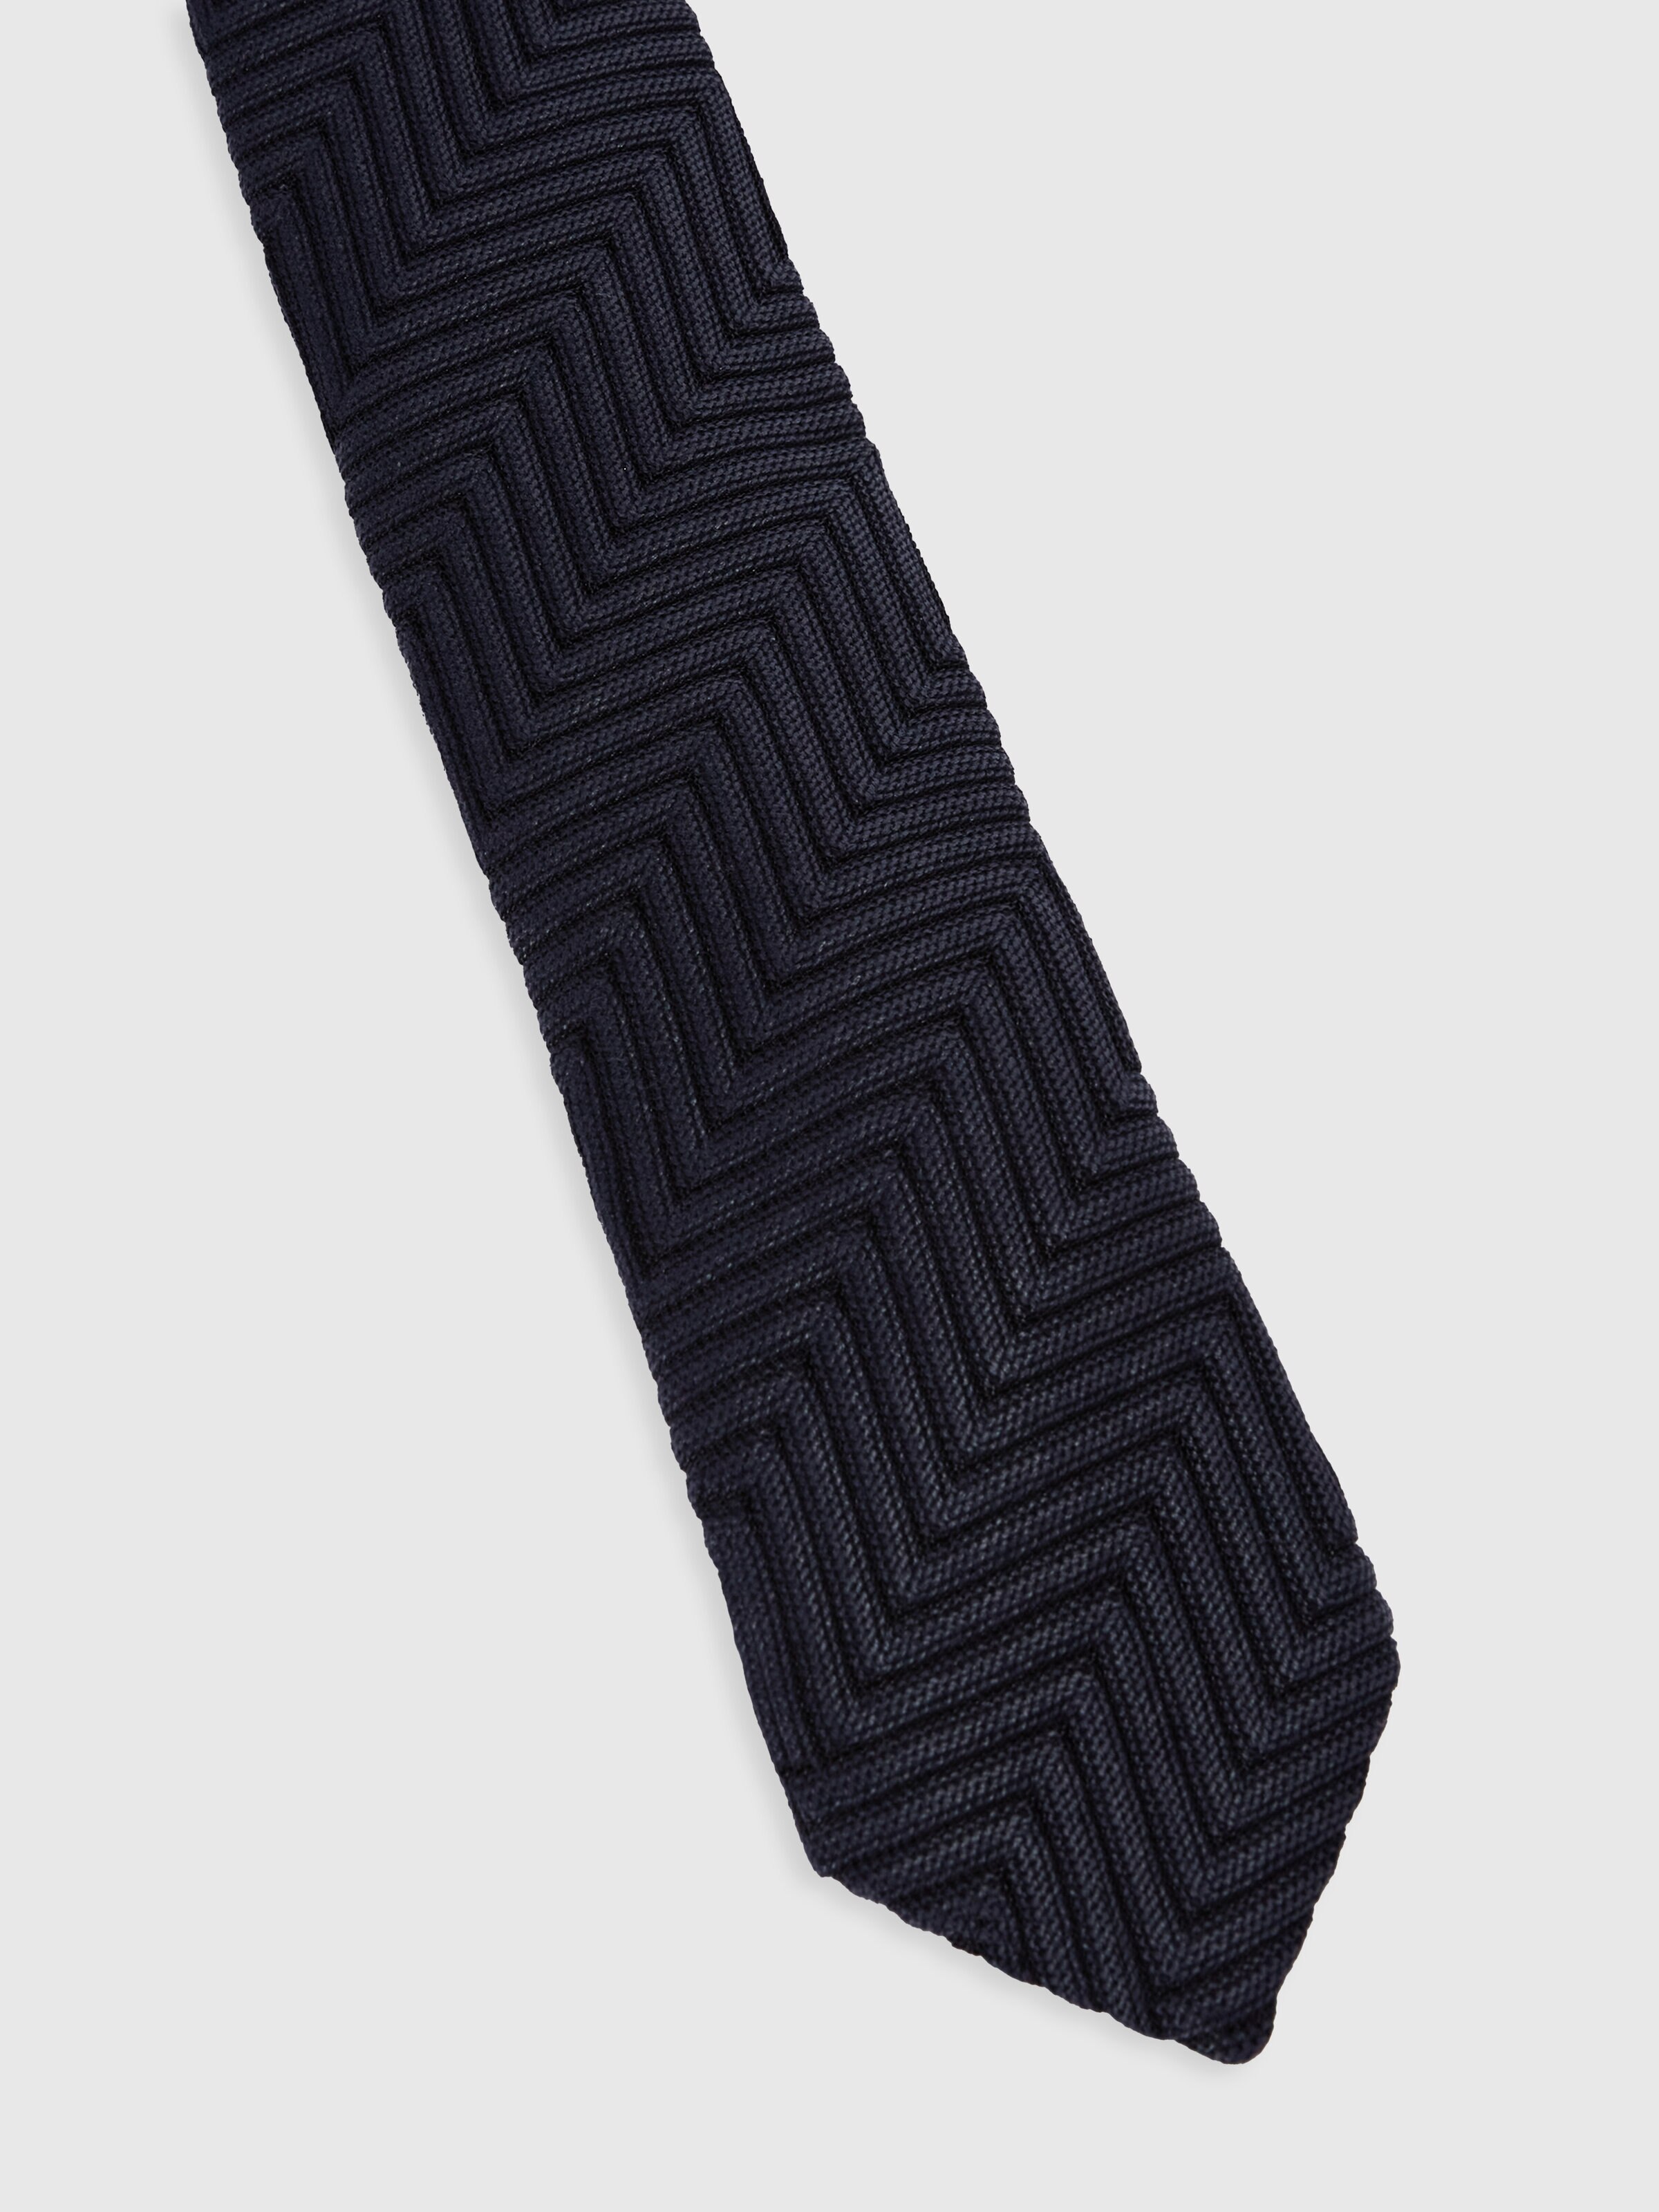 Corbata de algodón y viscosa con motivo de espigas, Multicolor  - 1